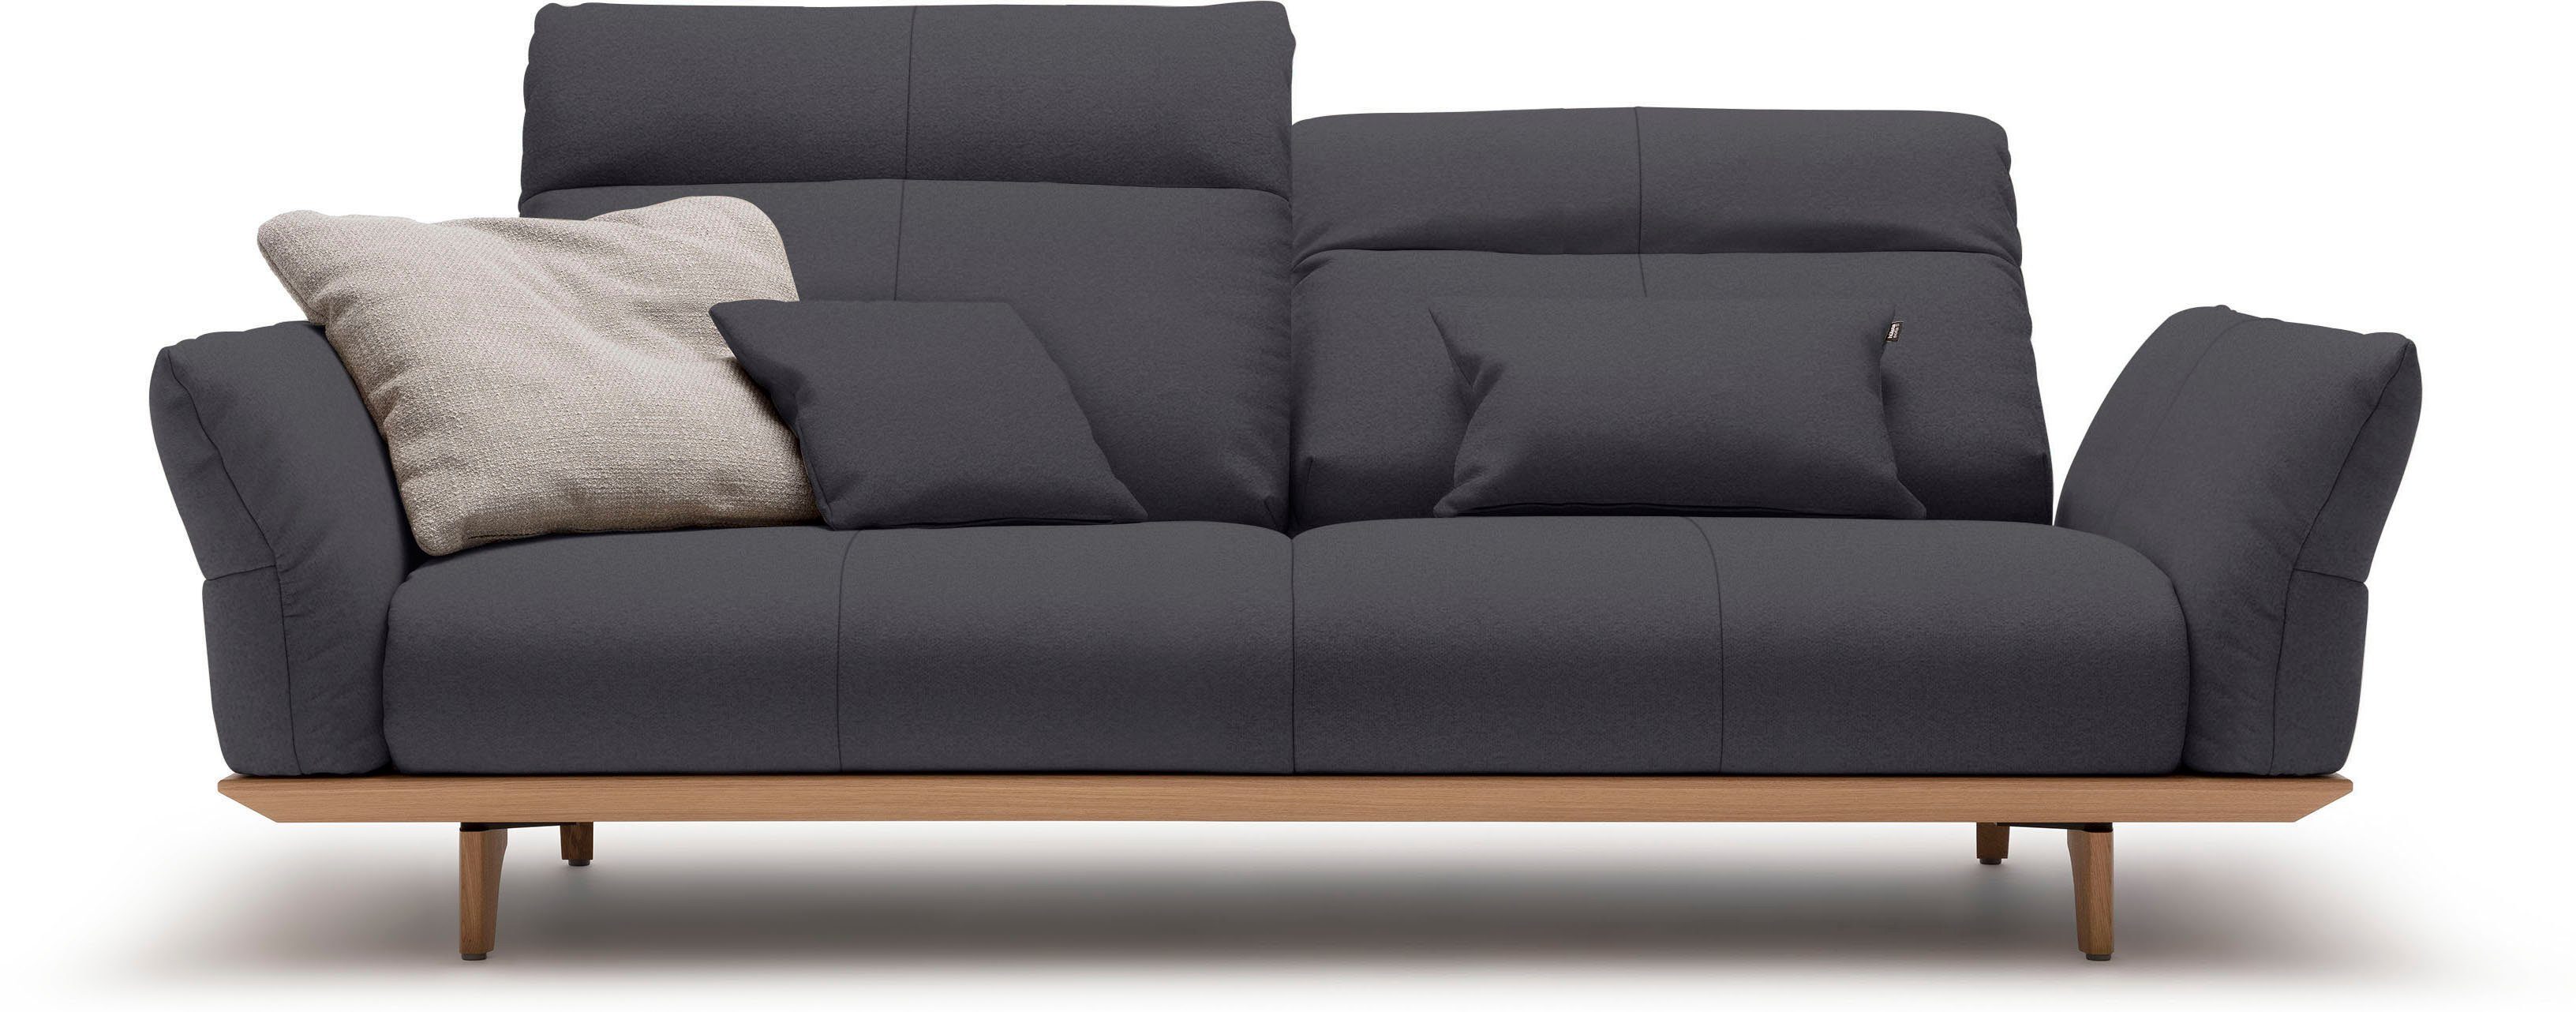 3-Sitzer Sockel hülsta sofa Breite Füße Eiche hs.460, in Eiche, natur, 208 cm